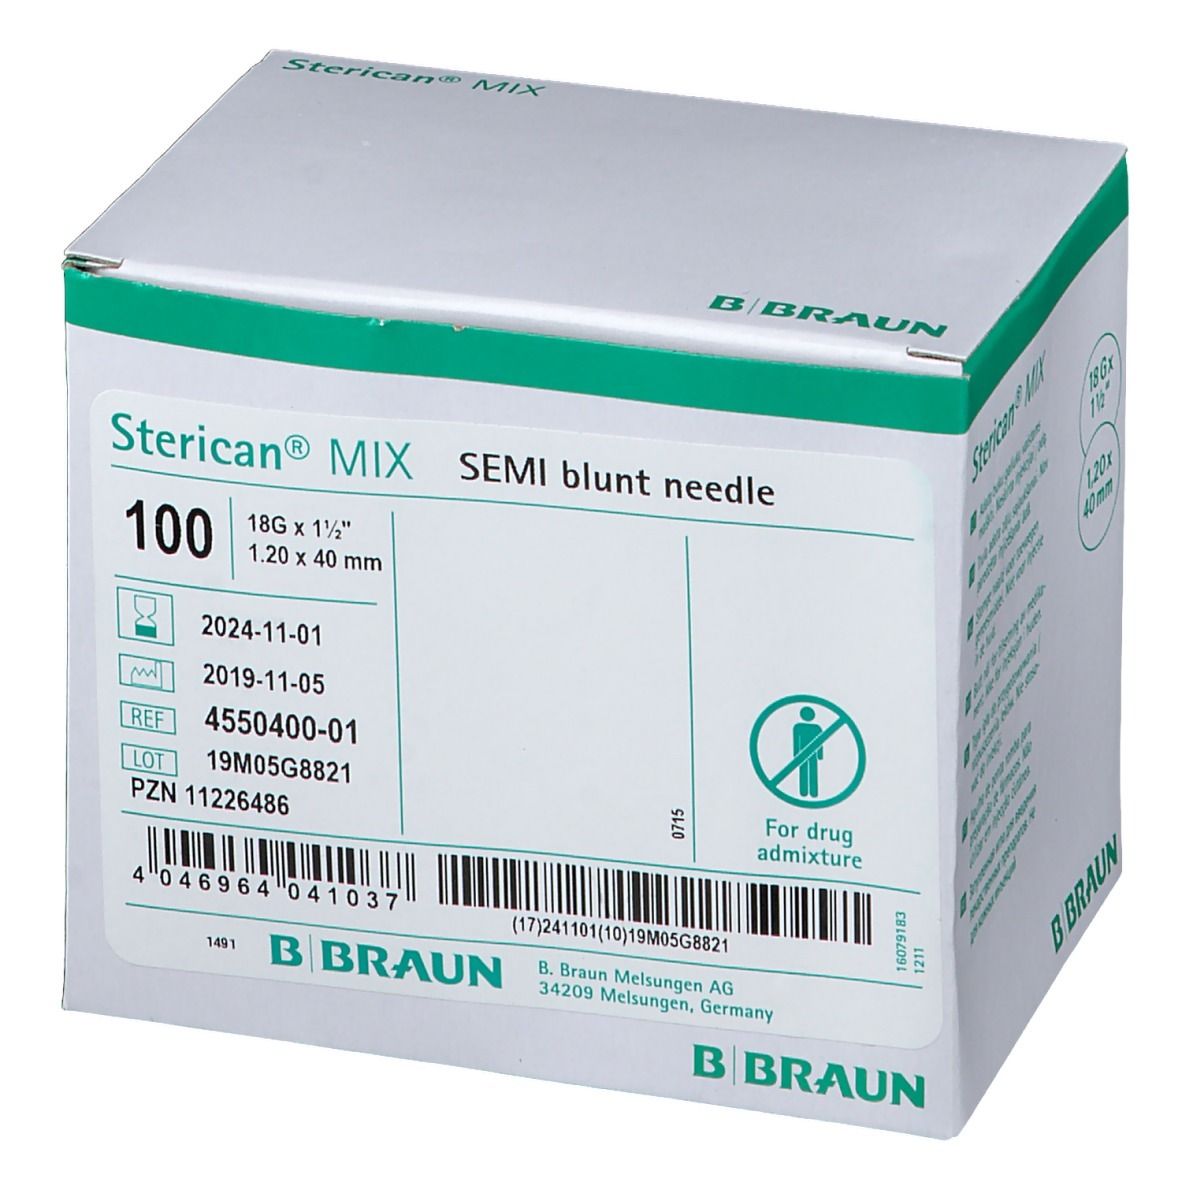 Sterican® Mix halbstumpf, G 18 x 1 1/2 / 1,20 mm x 40 mm